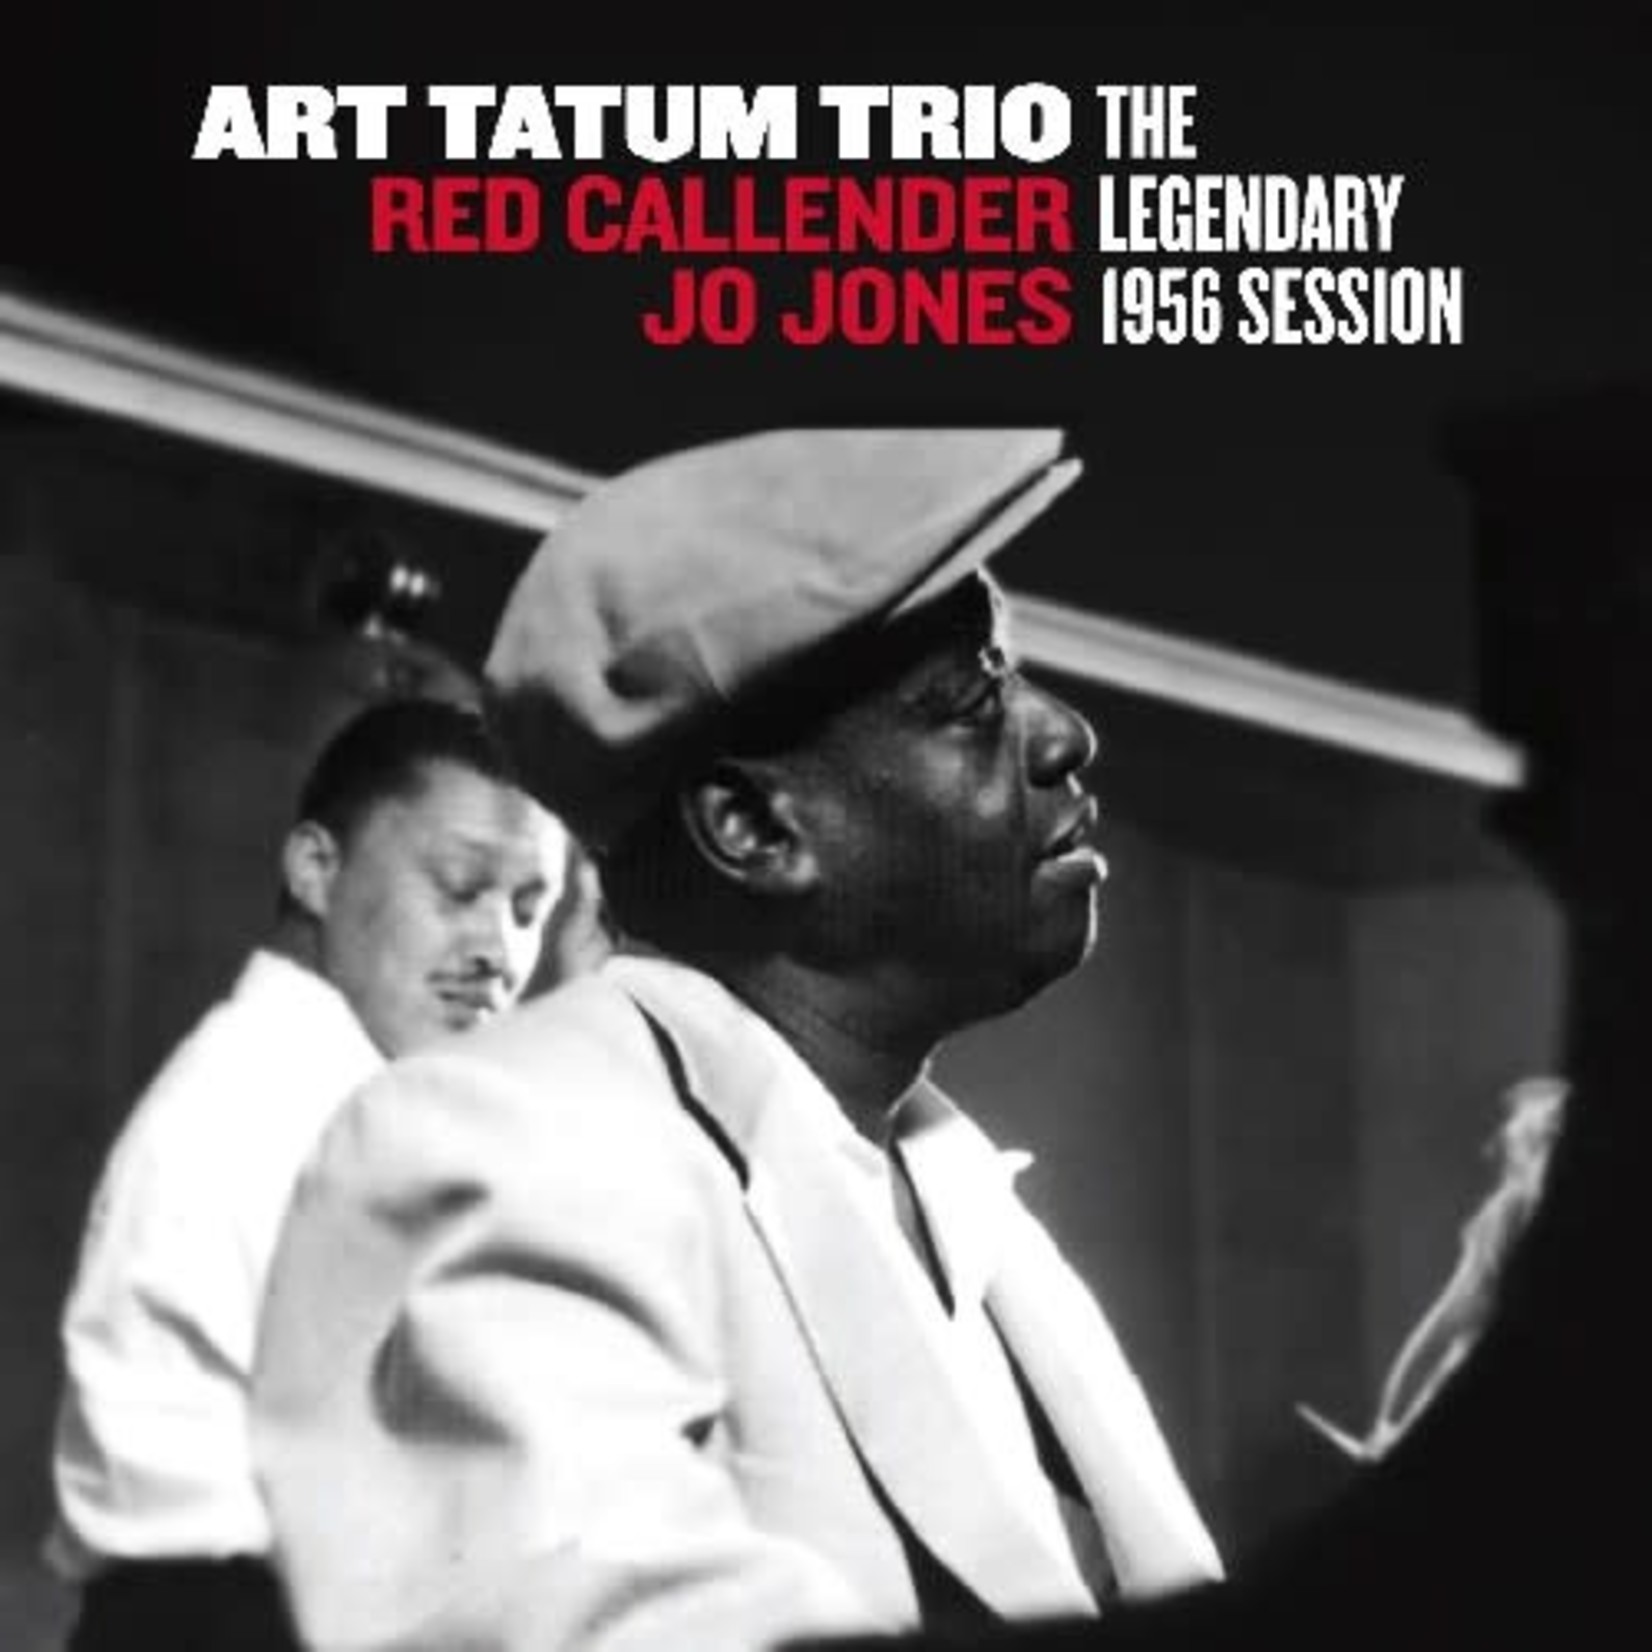 Art Tatum Trio - The Legendary 1956 Session (CD)